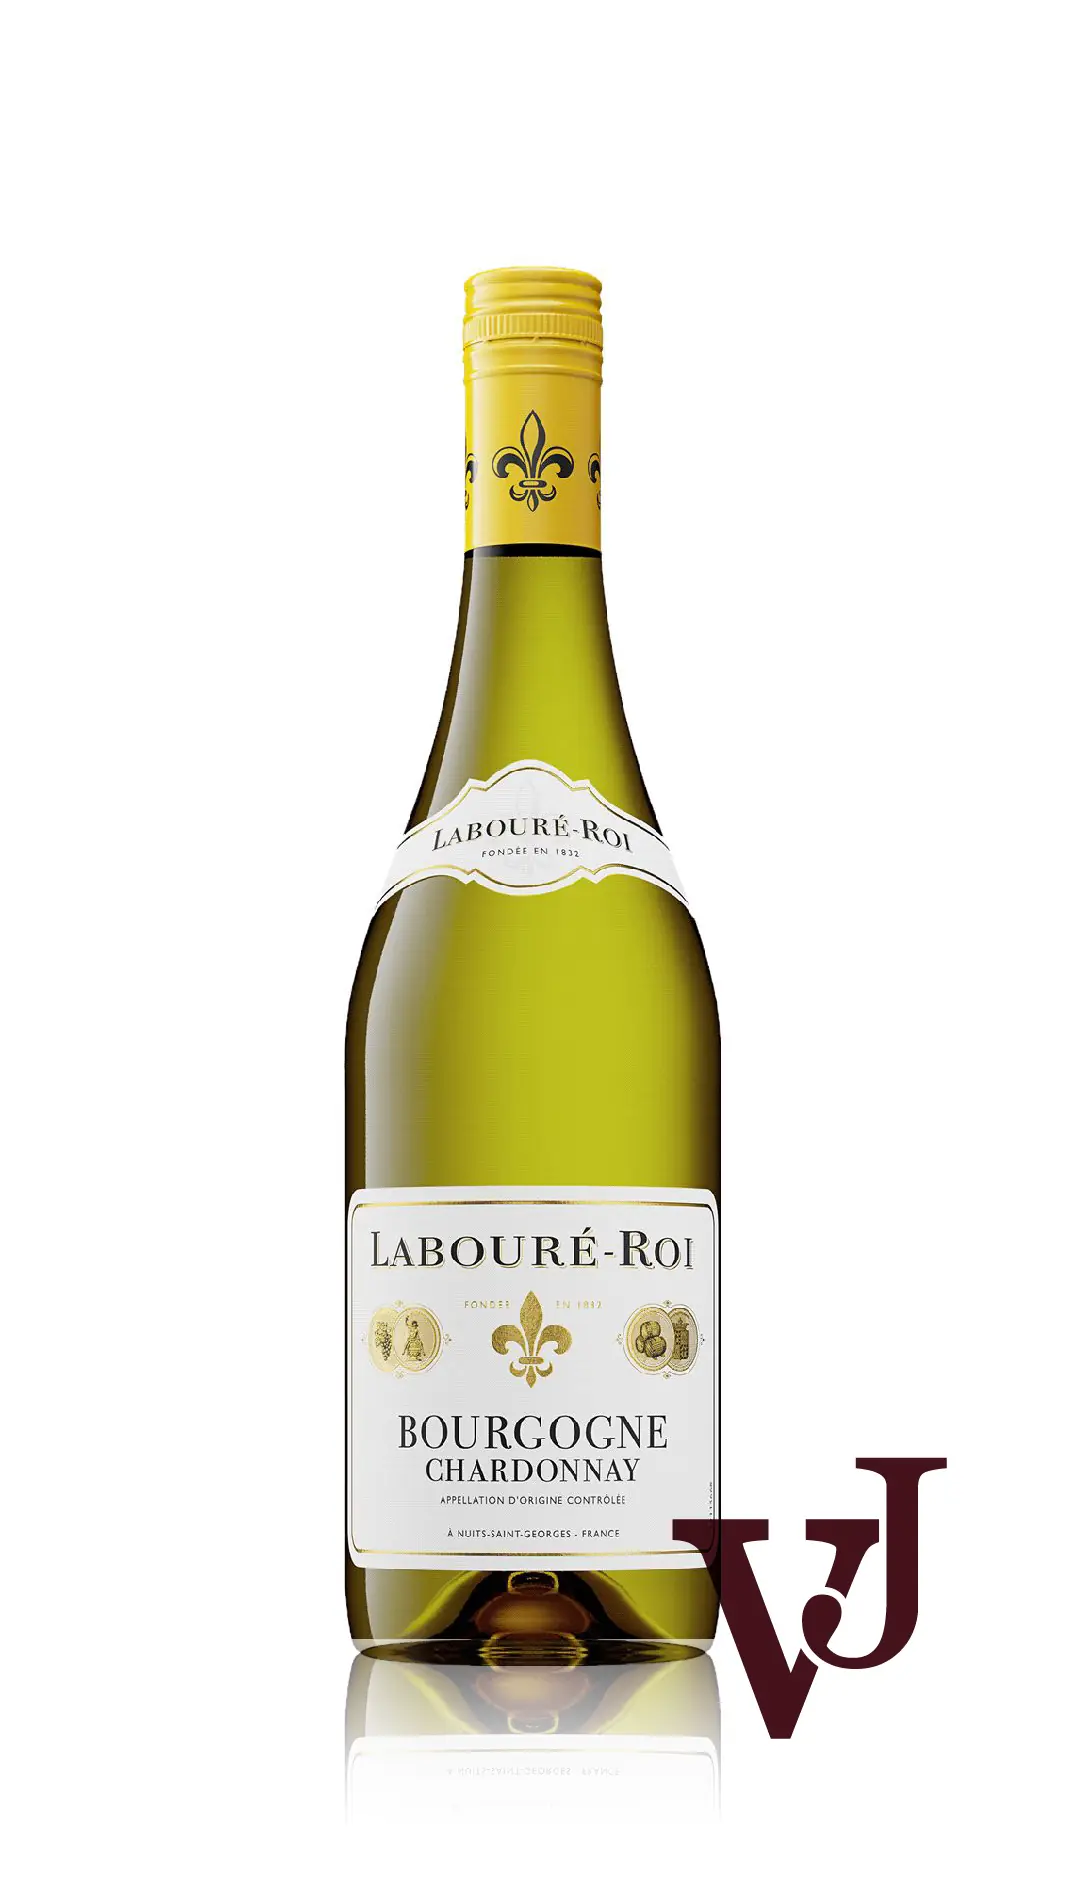 Vitt Vin - Labouré-Roi Bourgogne Chardonnay artikel nummer 7737201 från producenten Labouré-Roi från området Frankrike - Vinjournalen.se